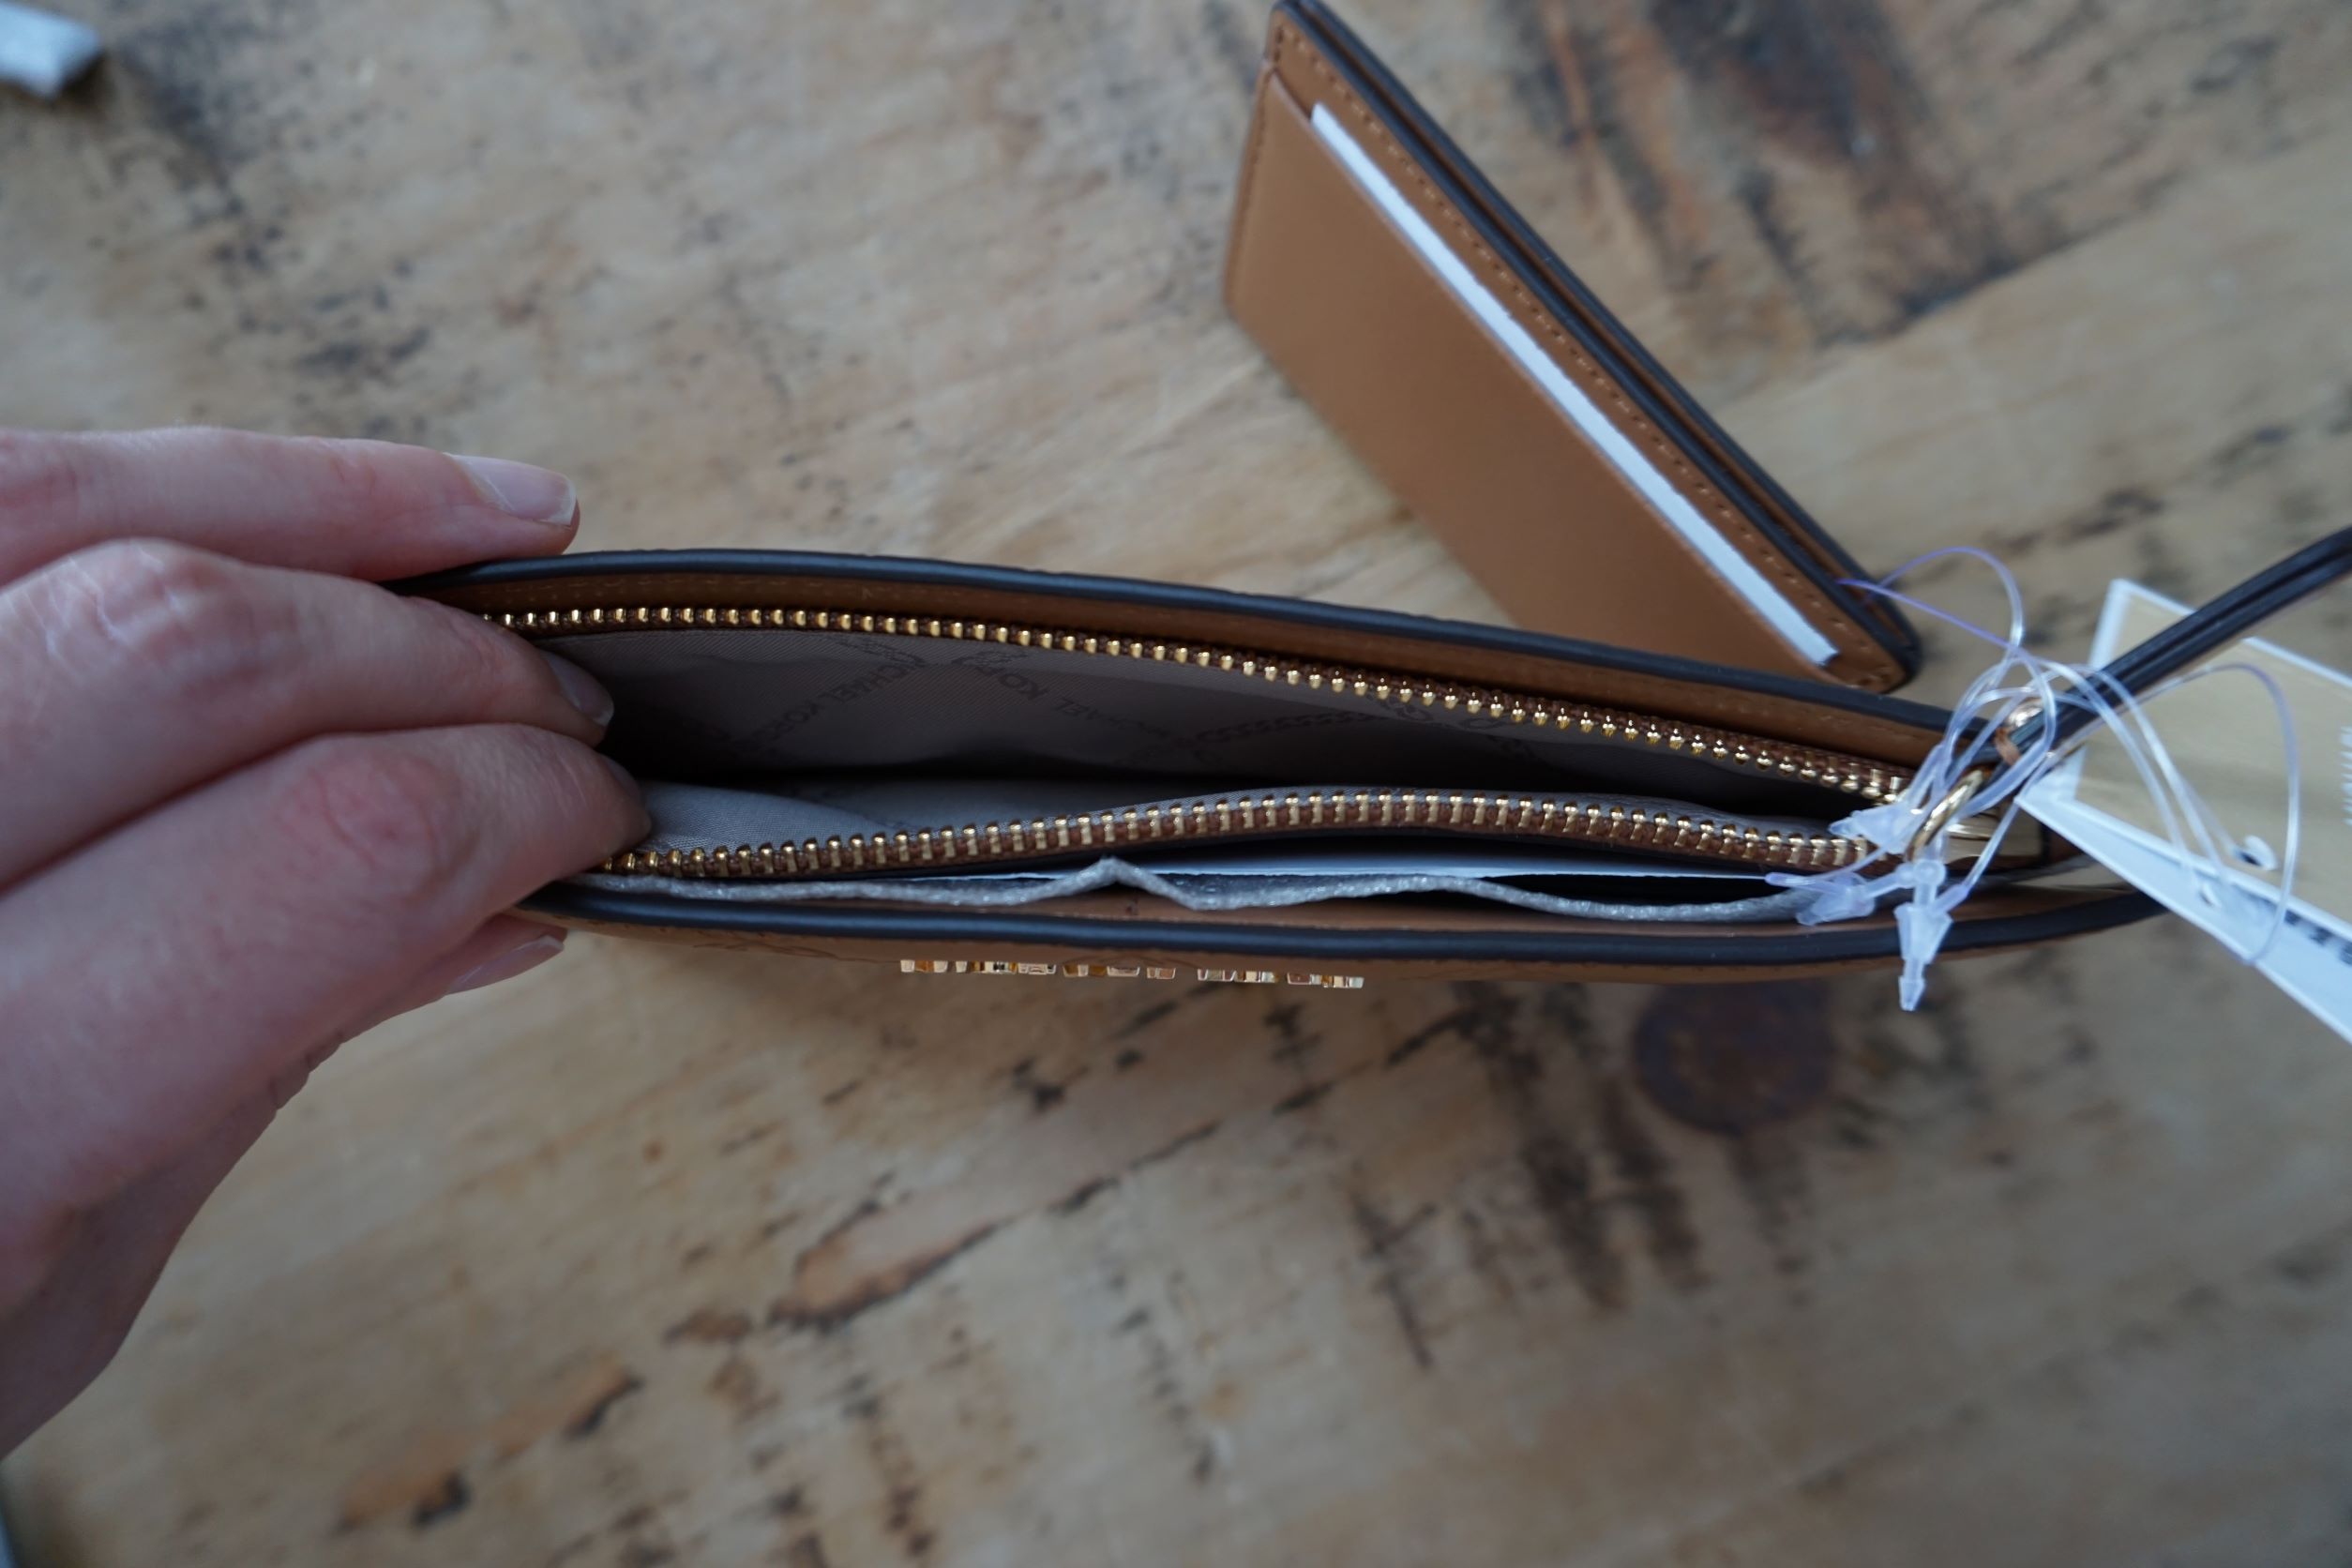 Michael Kors Money Pieces Large Card Case Acorn - Image 3 of 3